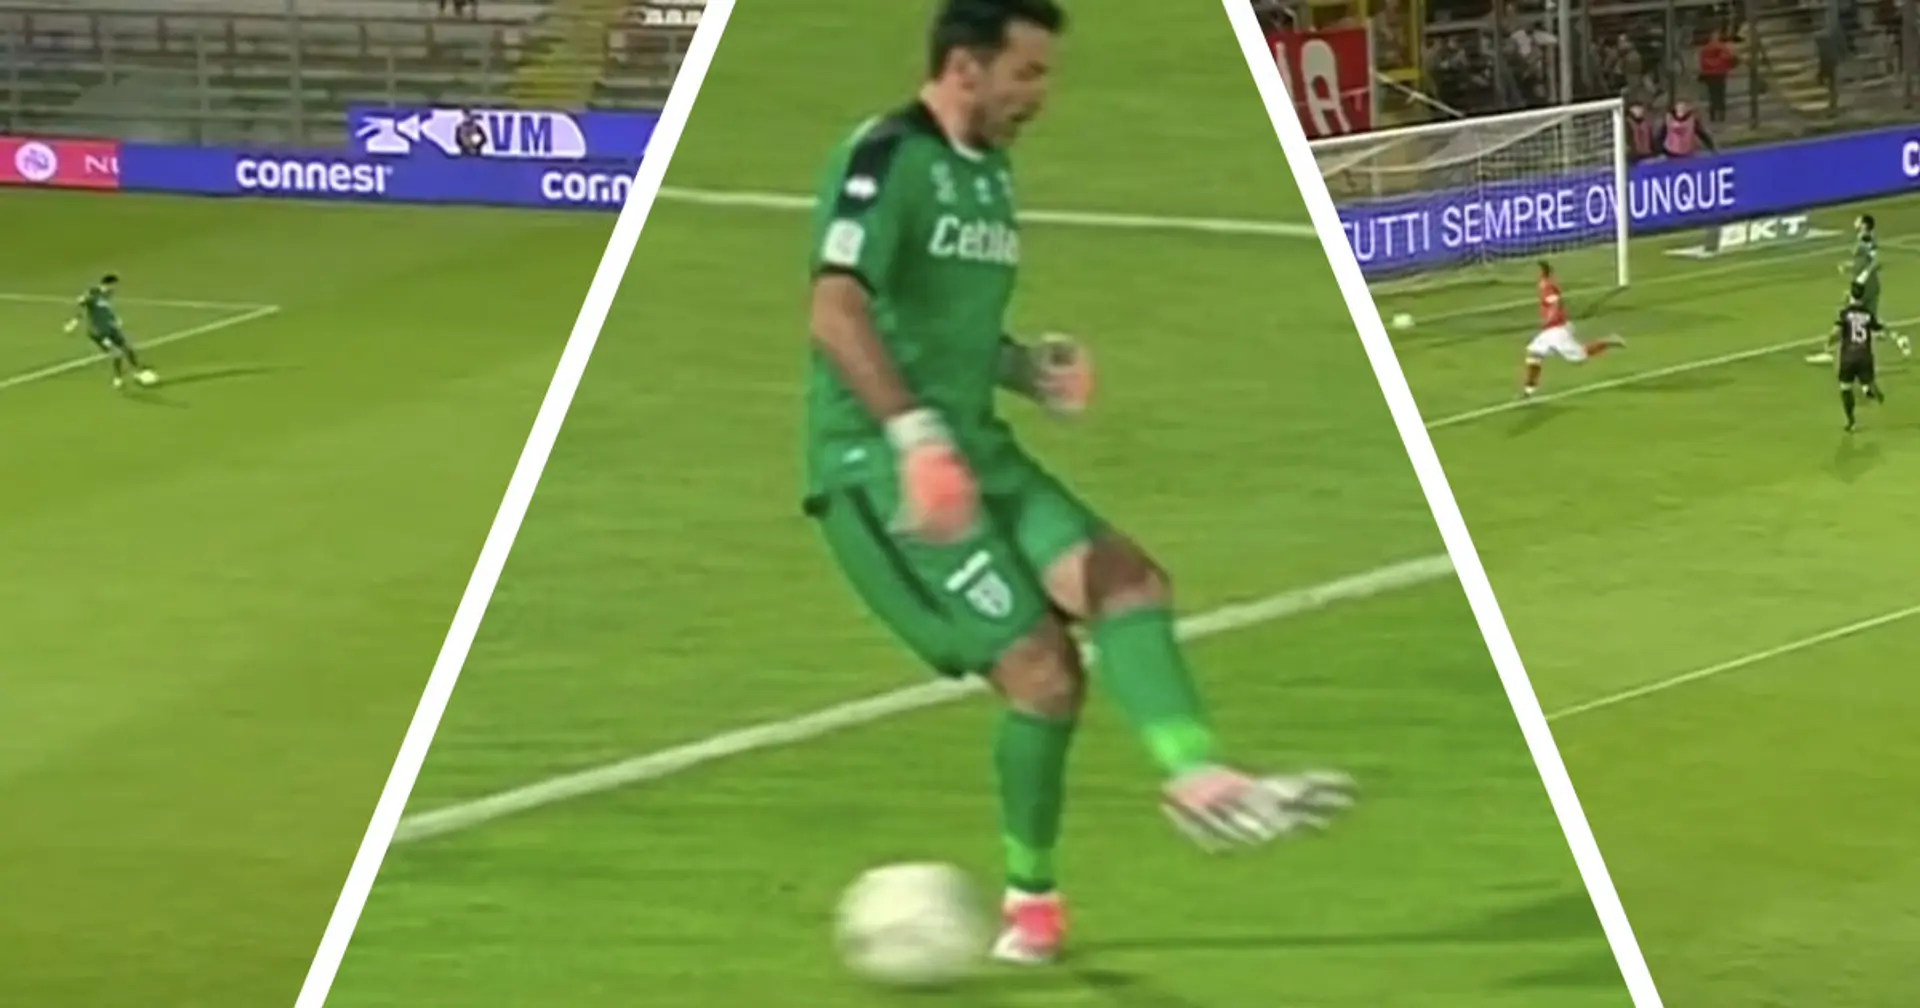 'Non è più all'altezza!': papera clamorosa dell'ex N.1 della Juve Gigi Buffon contro il Perugia, i tifosi lo attaccano